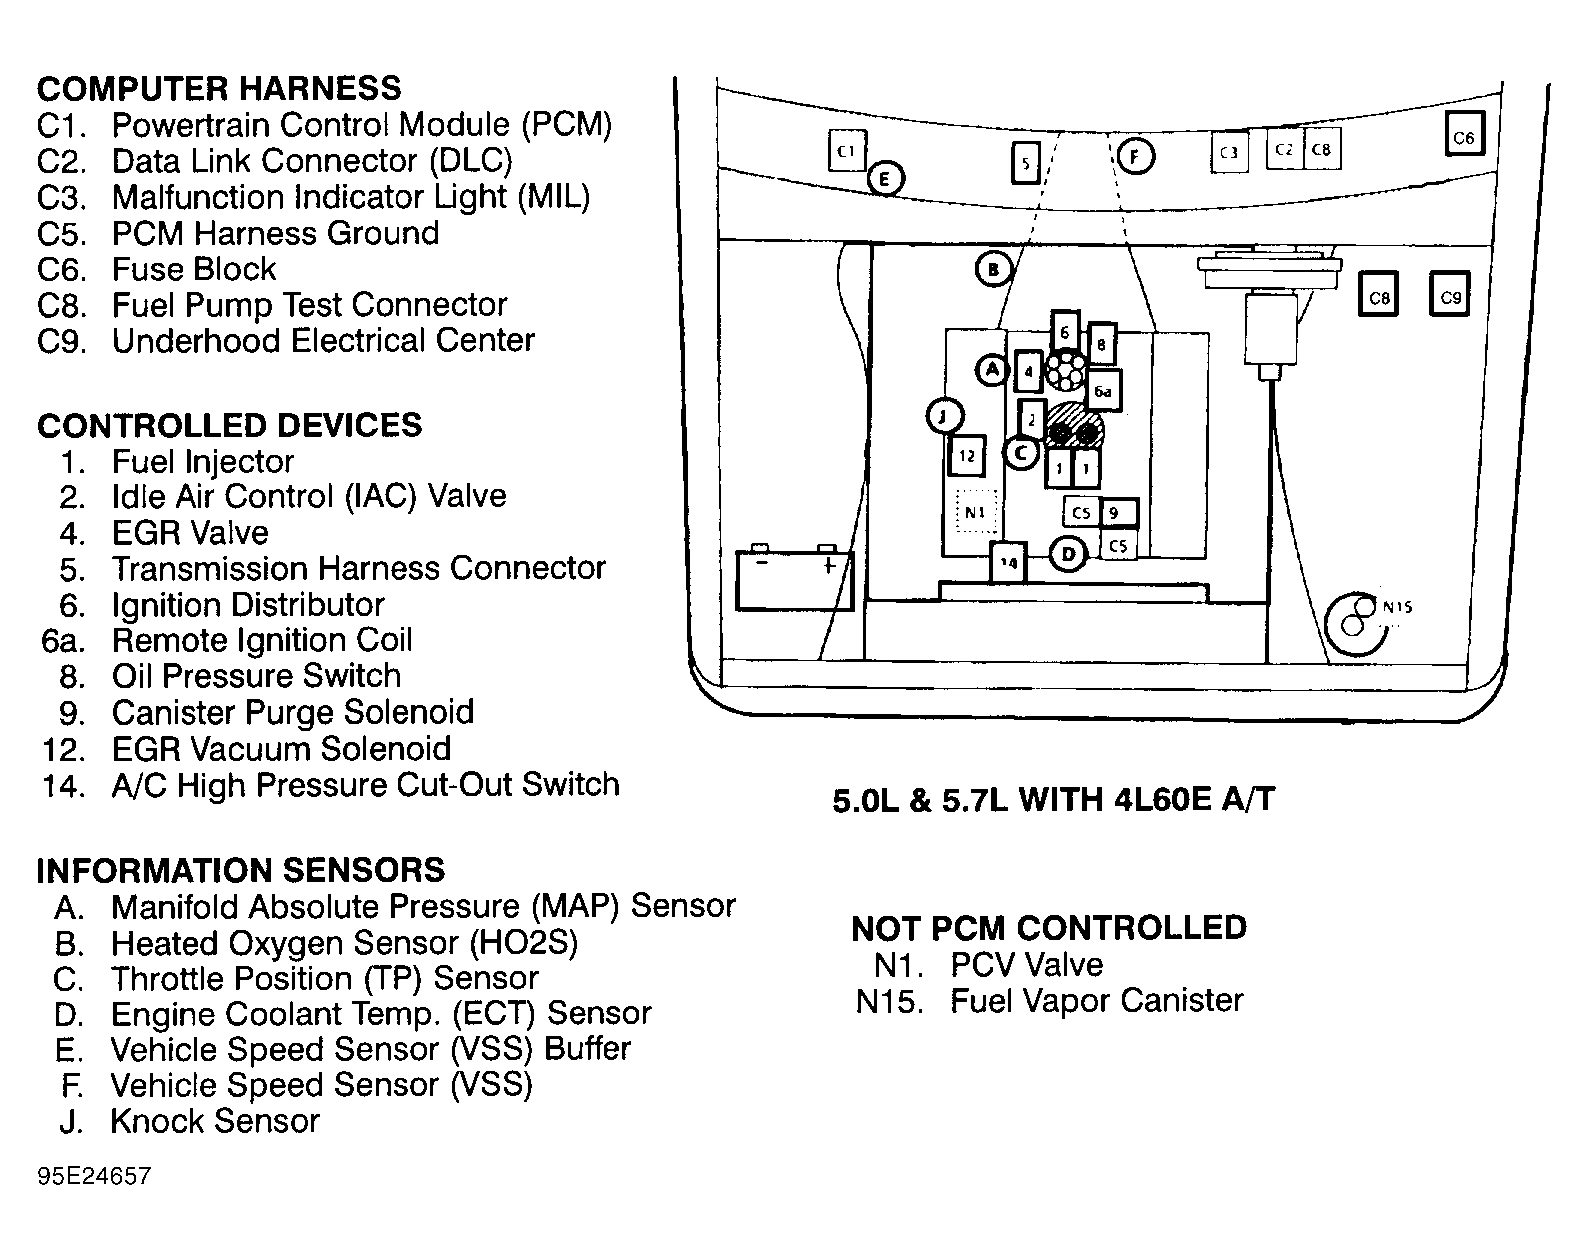 GMC Suburban K2500 1995 - Component Locations -  Engine Compartment (5.0L & 5.7L W/4L60E A/T)